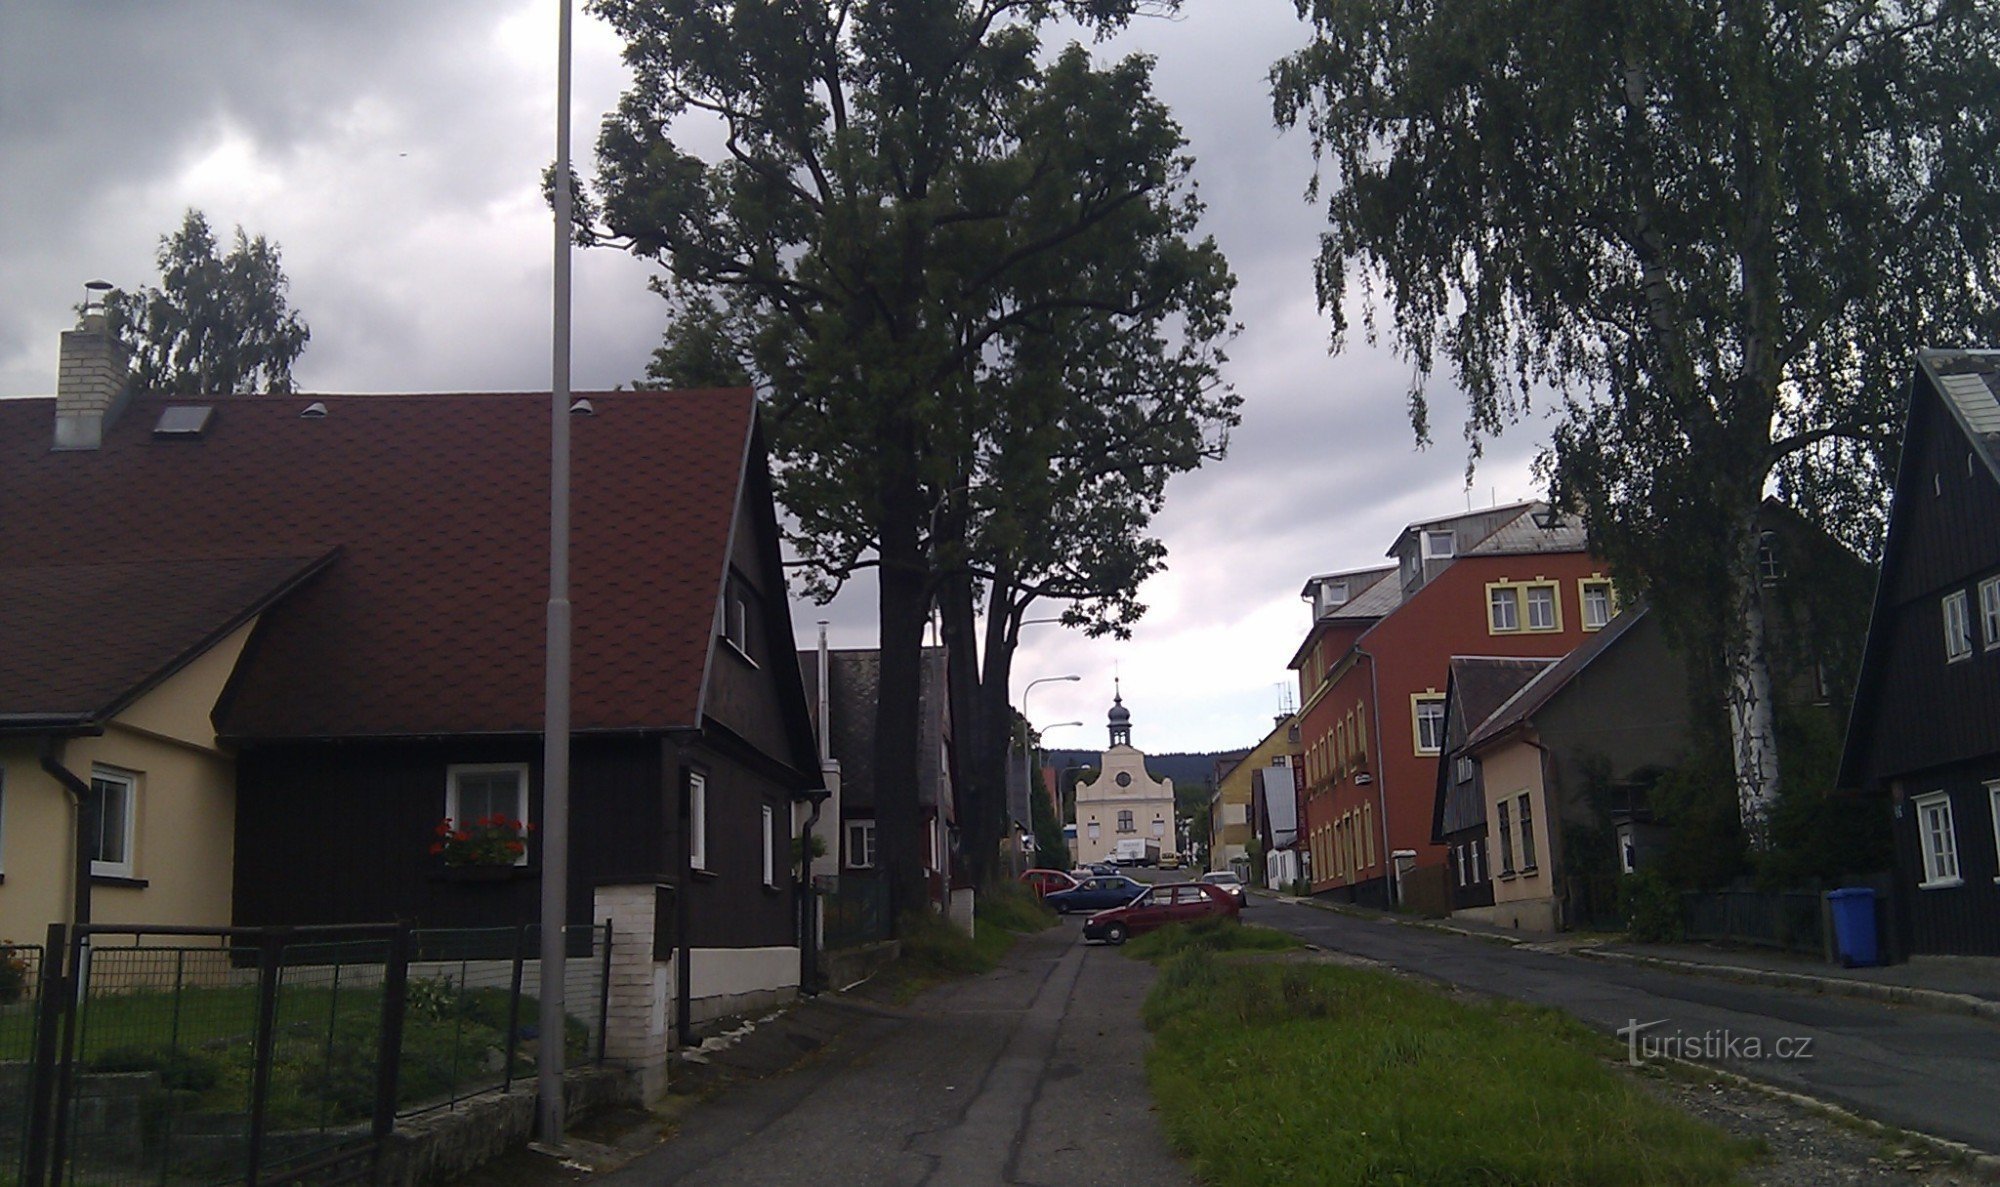 Volgogradska street, Liberec